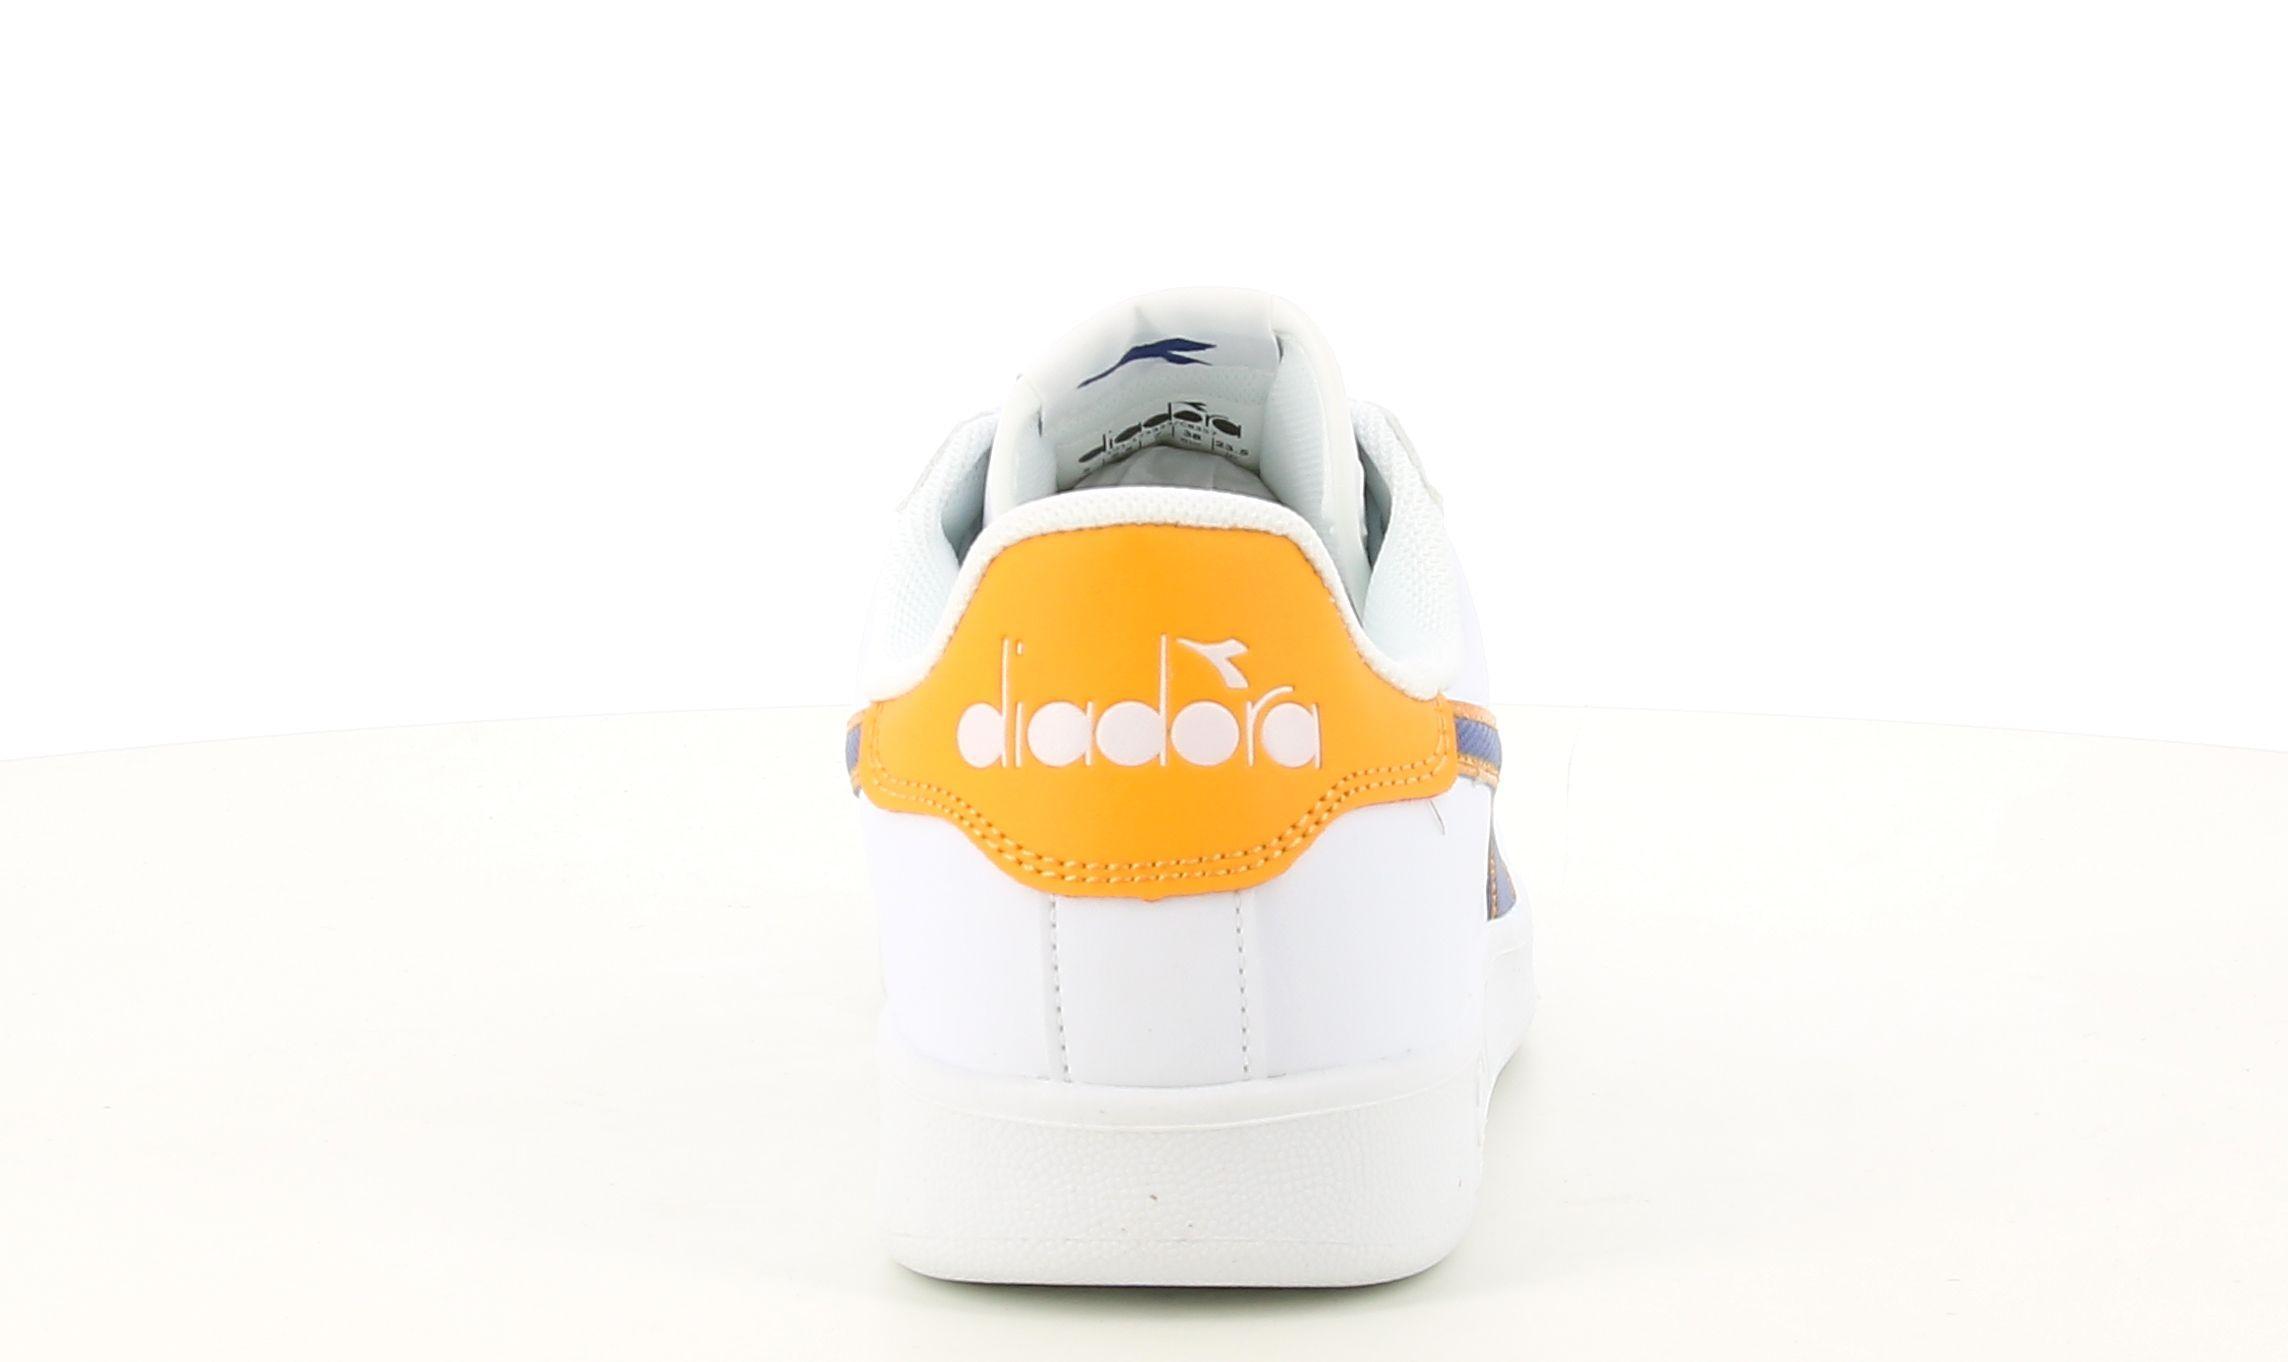 diadora sneakers diadora game p gs 173323. da ragazzo, colore bianco/blu quarzo